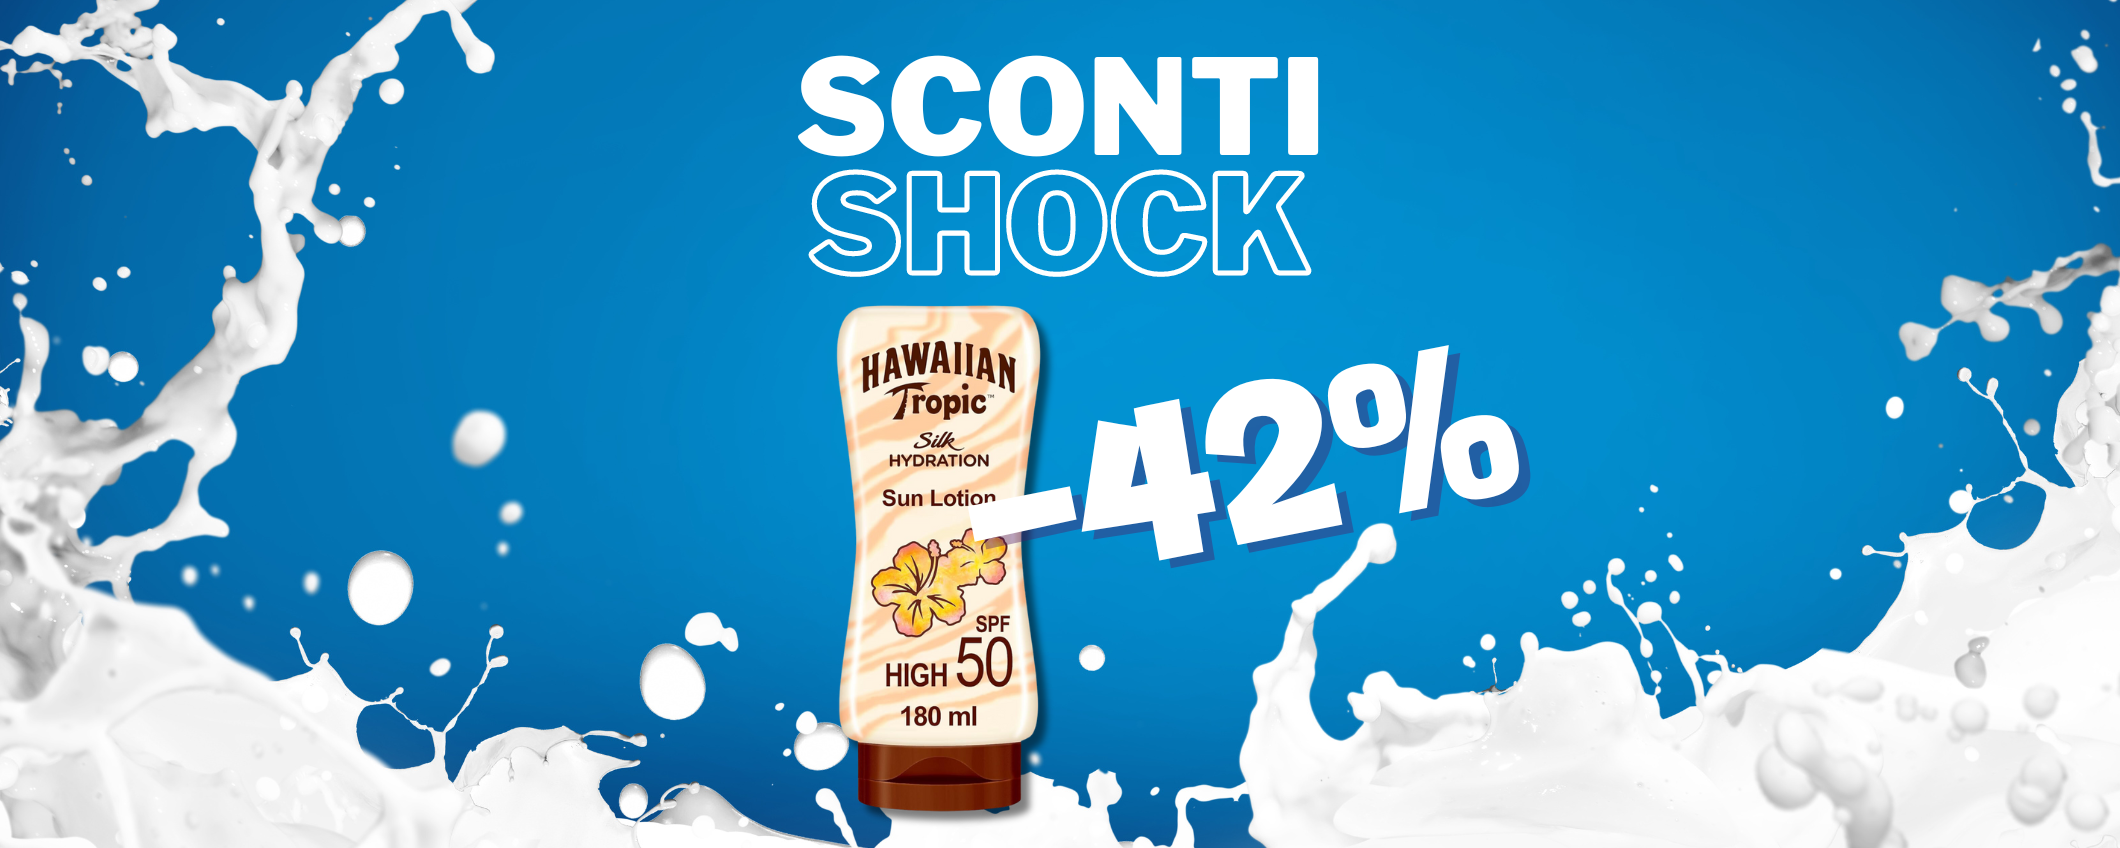 Crema solare Hawaiian Tropic SPF 50 a prezzo SHOCK (-42%)